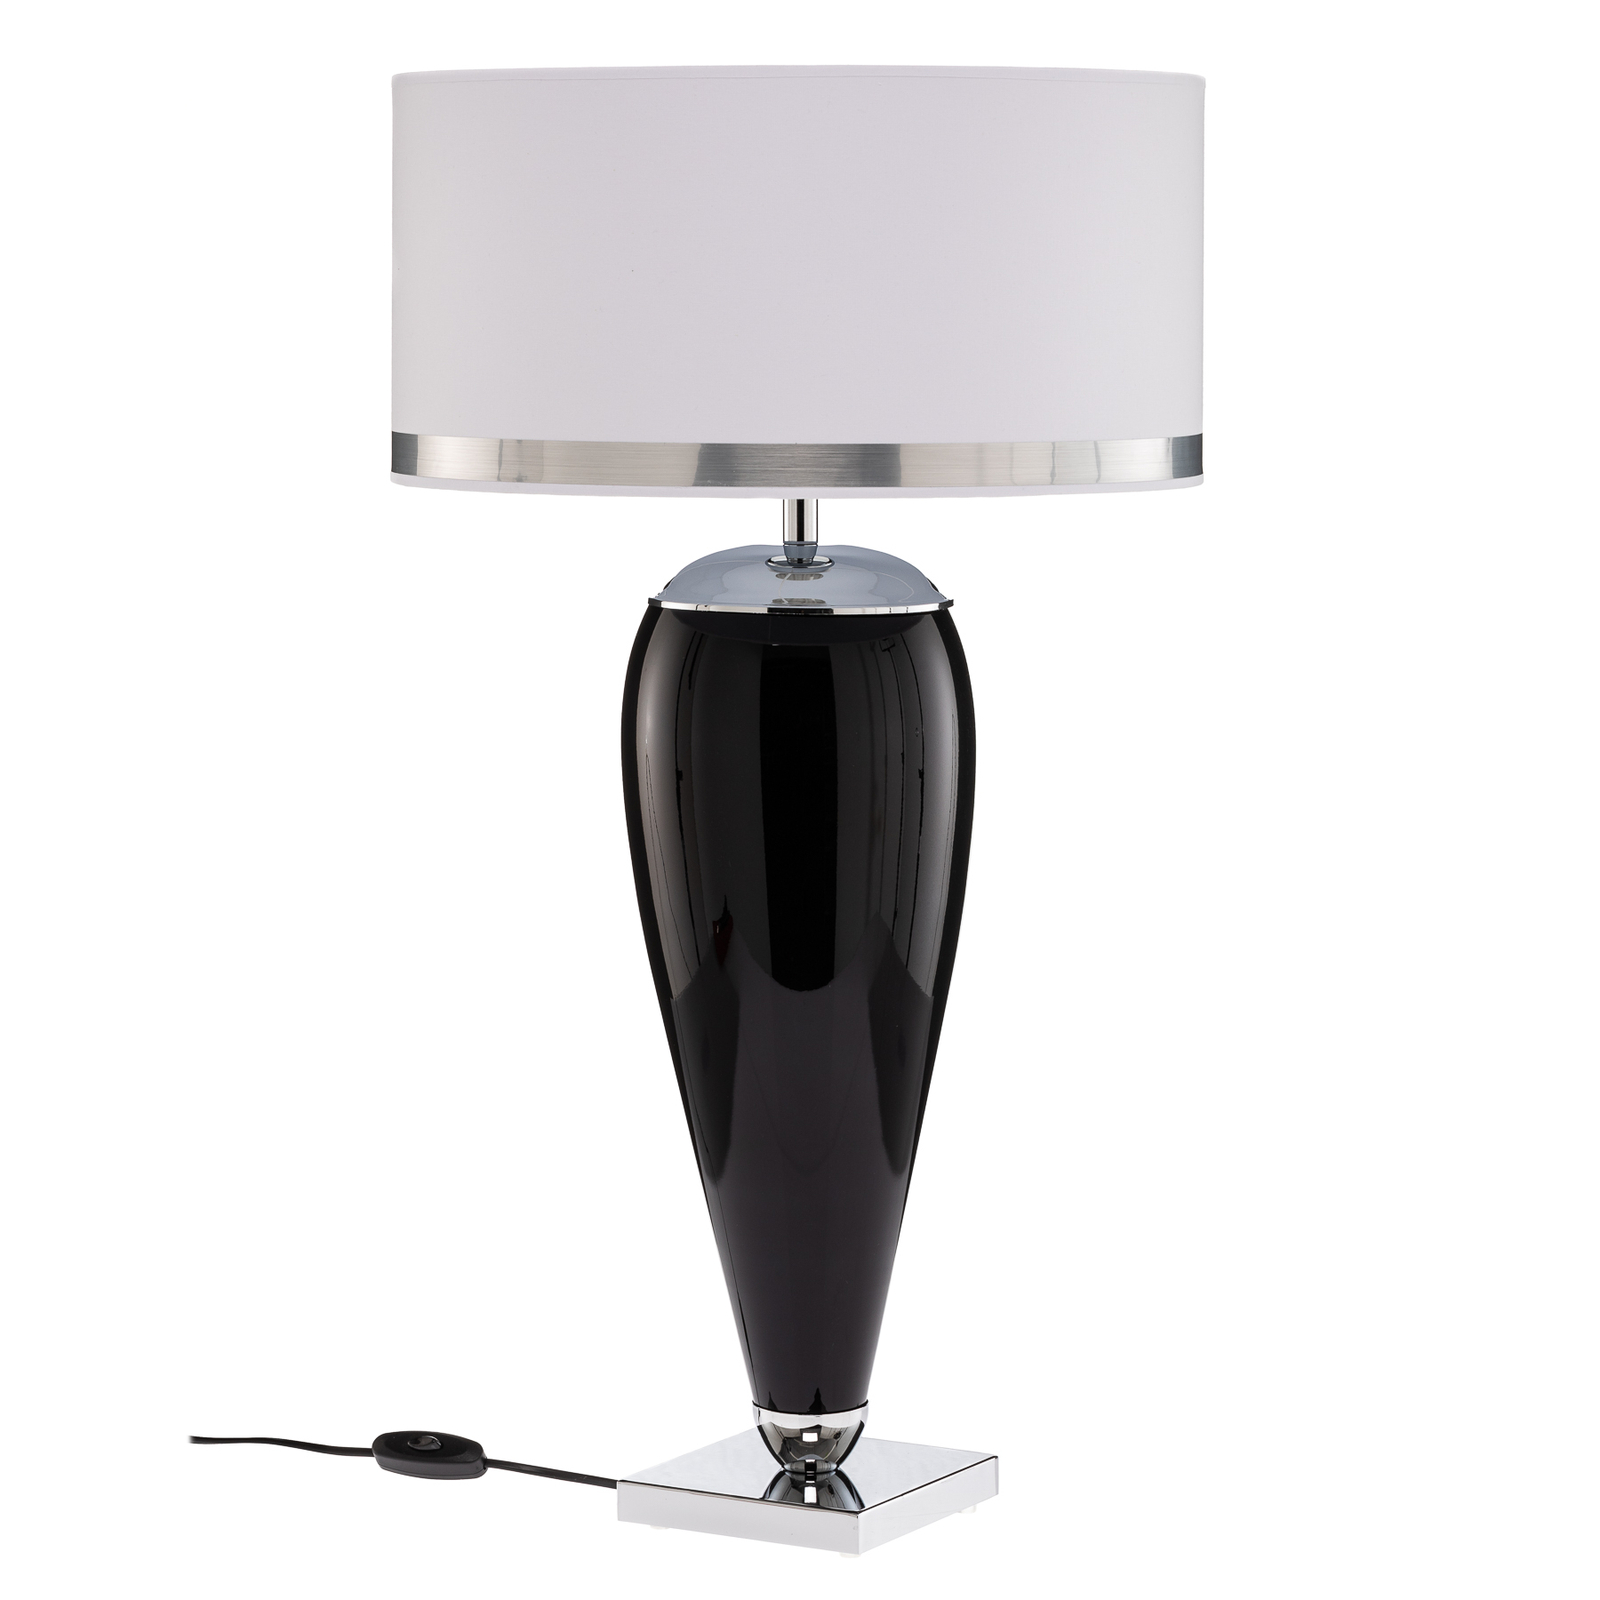 Pöytälamppu Lund valkoinen ja musta, korkeus 70 cm